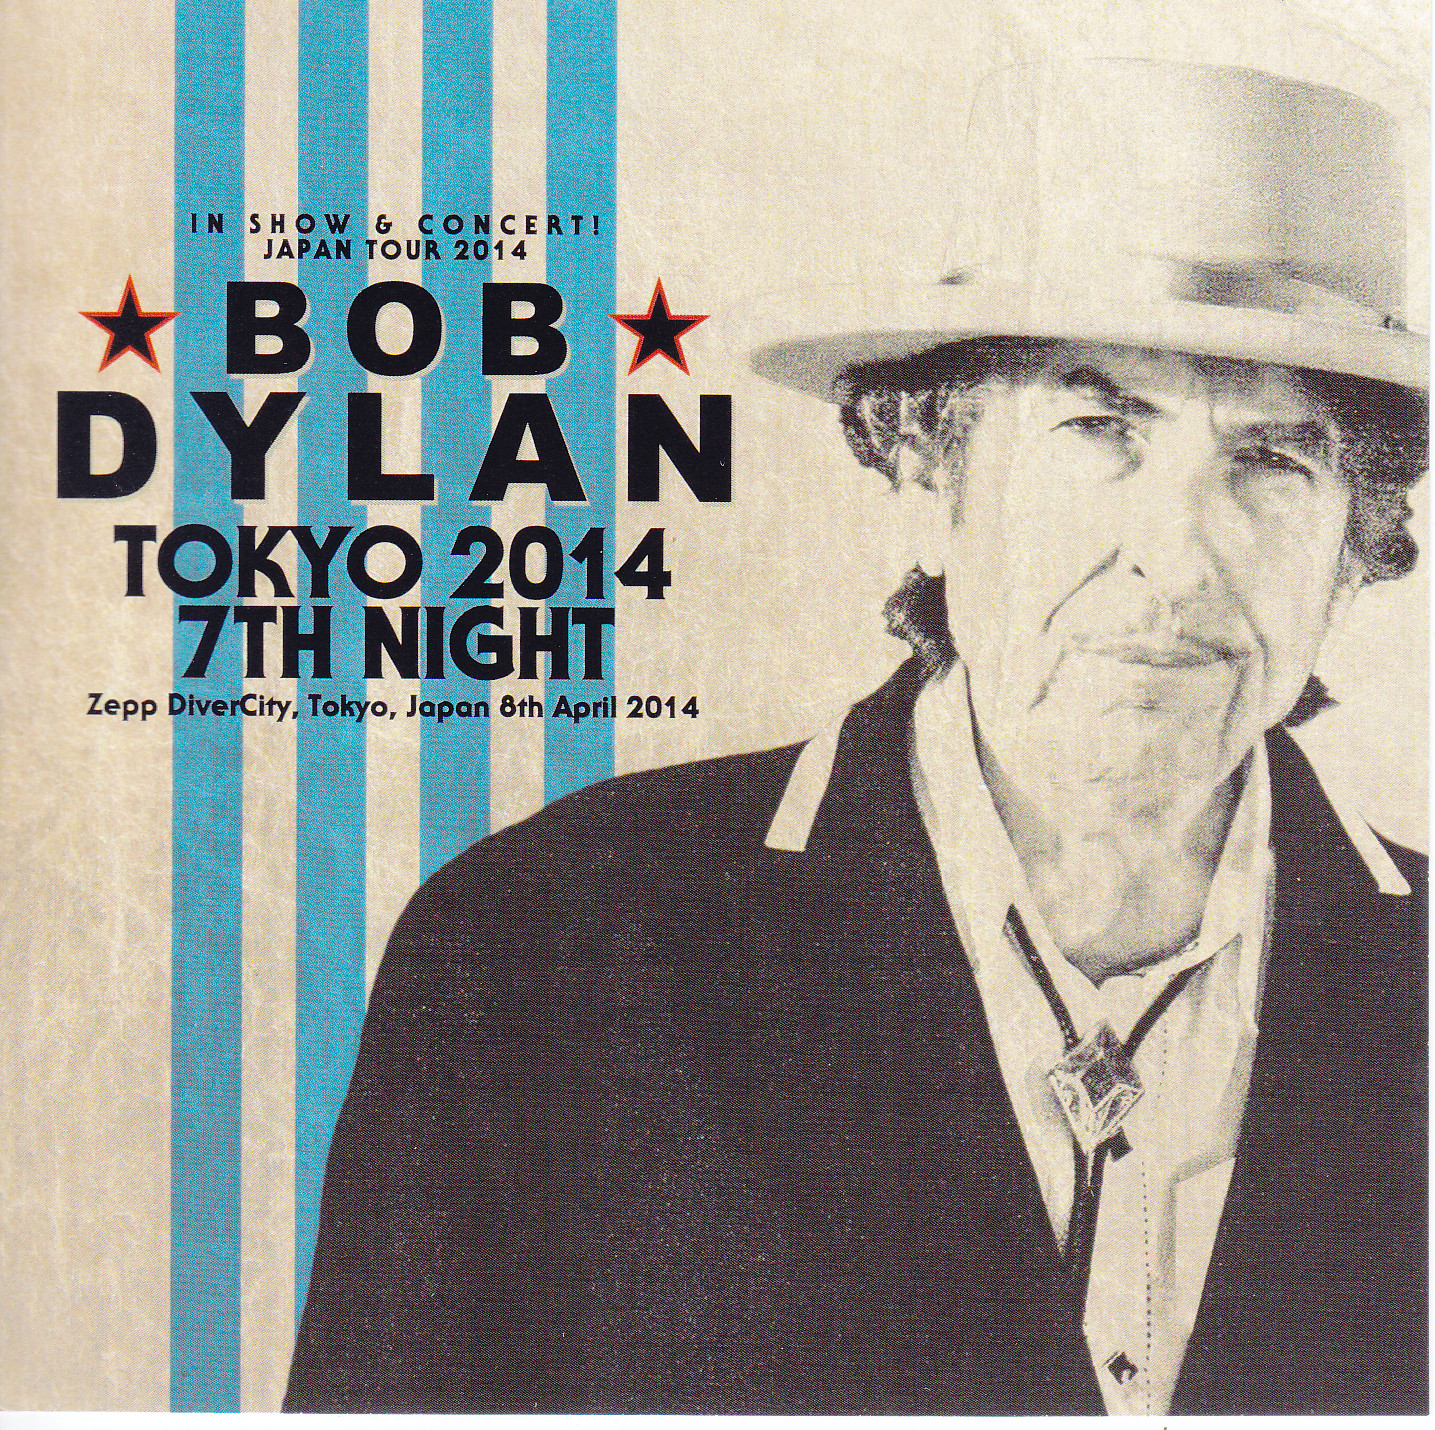 ボブ・ディラン Bob Dylan ジャパン・ツアー 2014 パンフレット Japan Tour Program 2014 【美品】